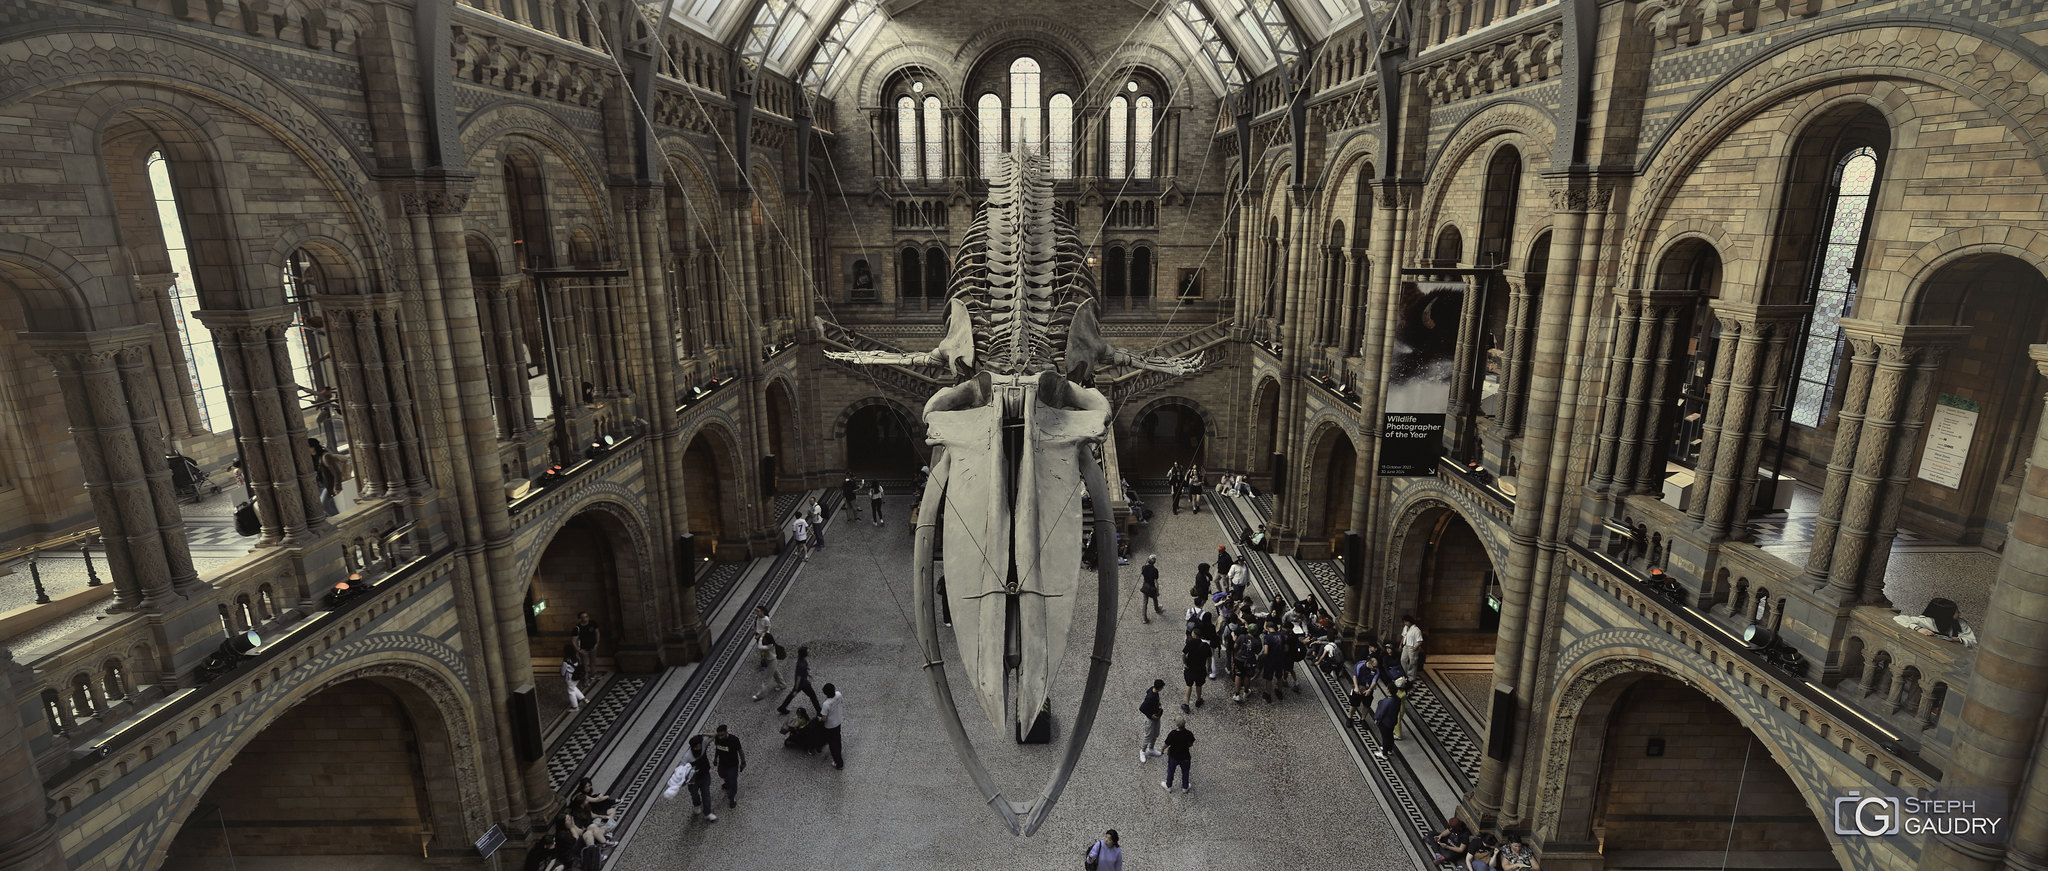 Hope - the skeleton of a blue whale [Klicken Sie hier, um die Diashow zu starten]